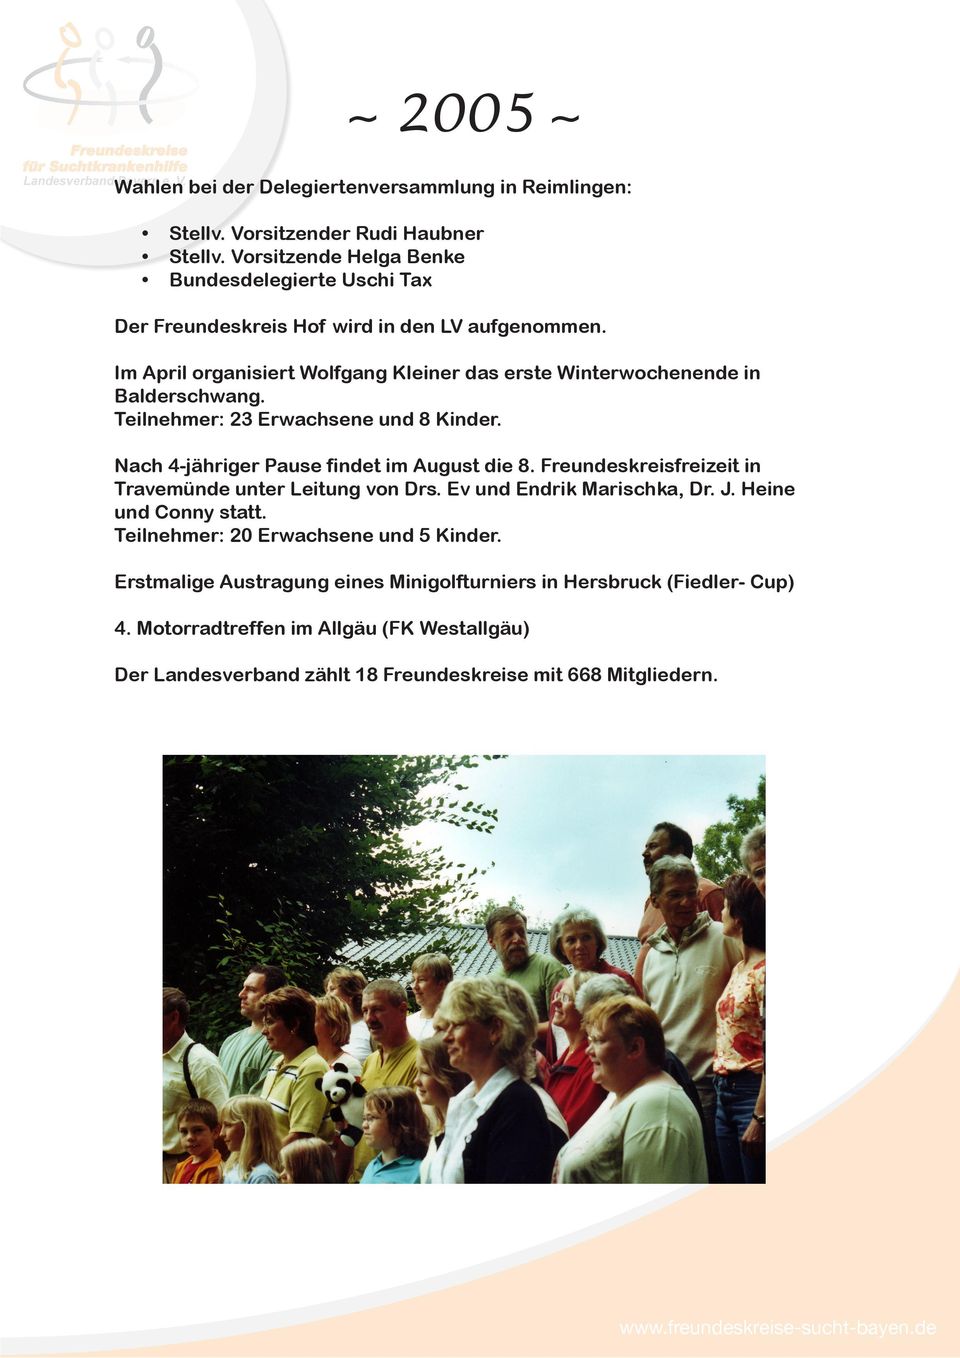 Im April organisiert Wolfgang Kleiner das erste Winterwochenende in Balderschwang. Teilnehmer: 23 Erwachsene und 8 Kinder. Nach 4-jähriger Pause findet im August die 8.